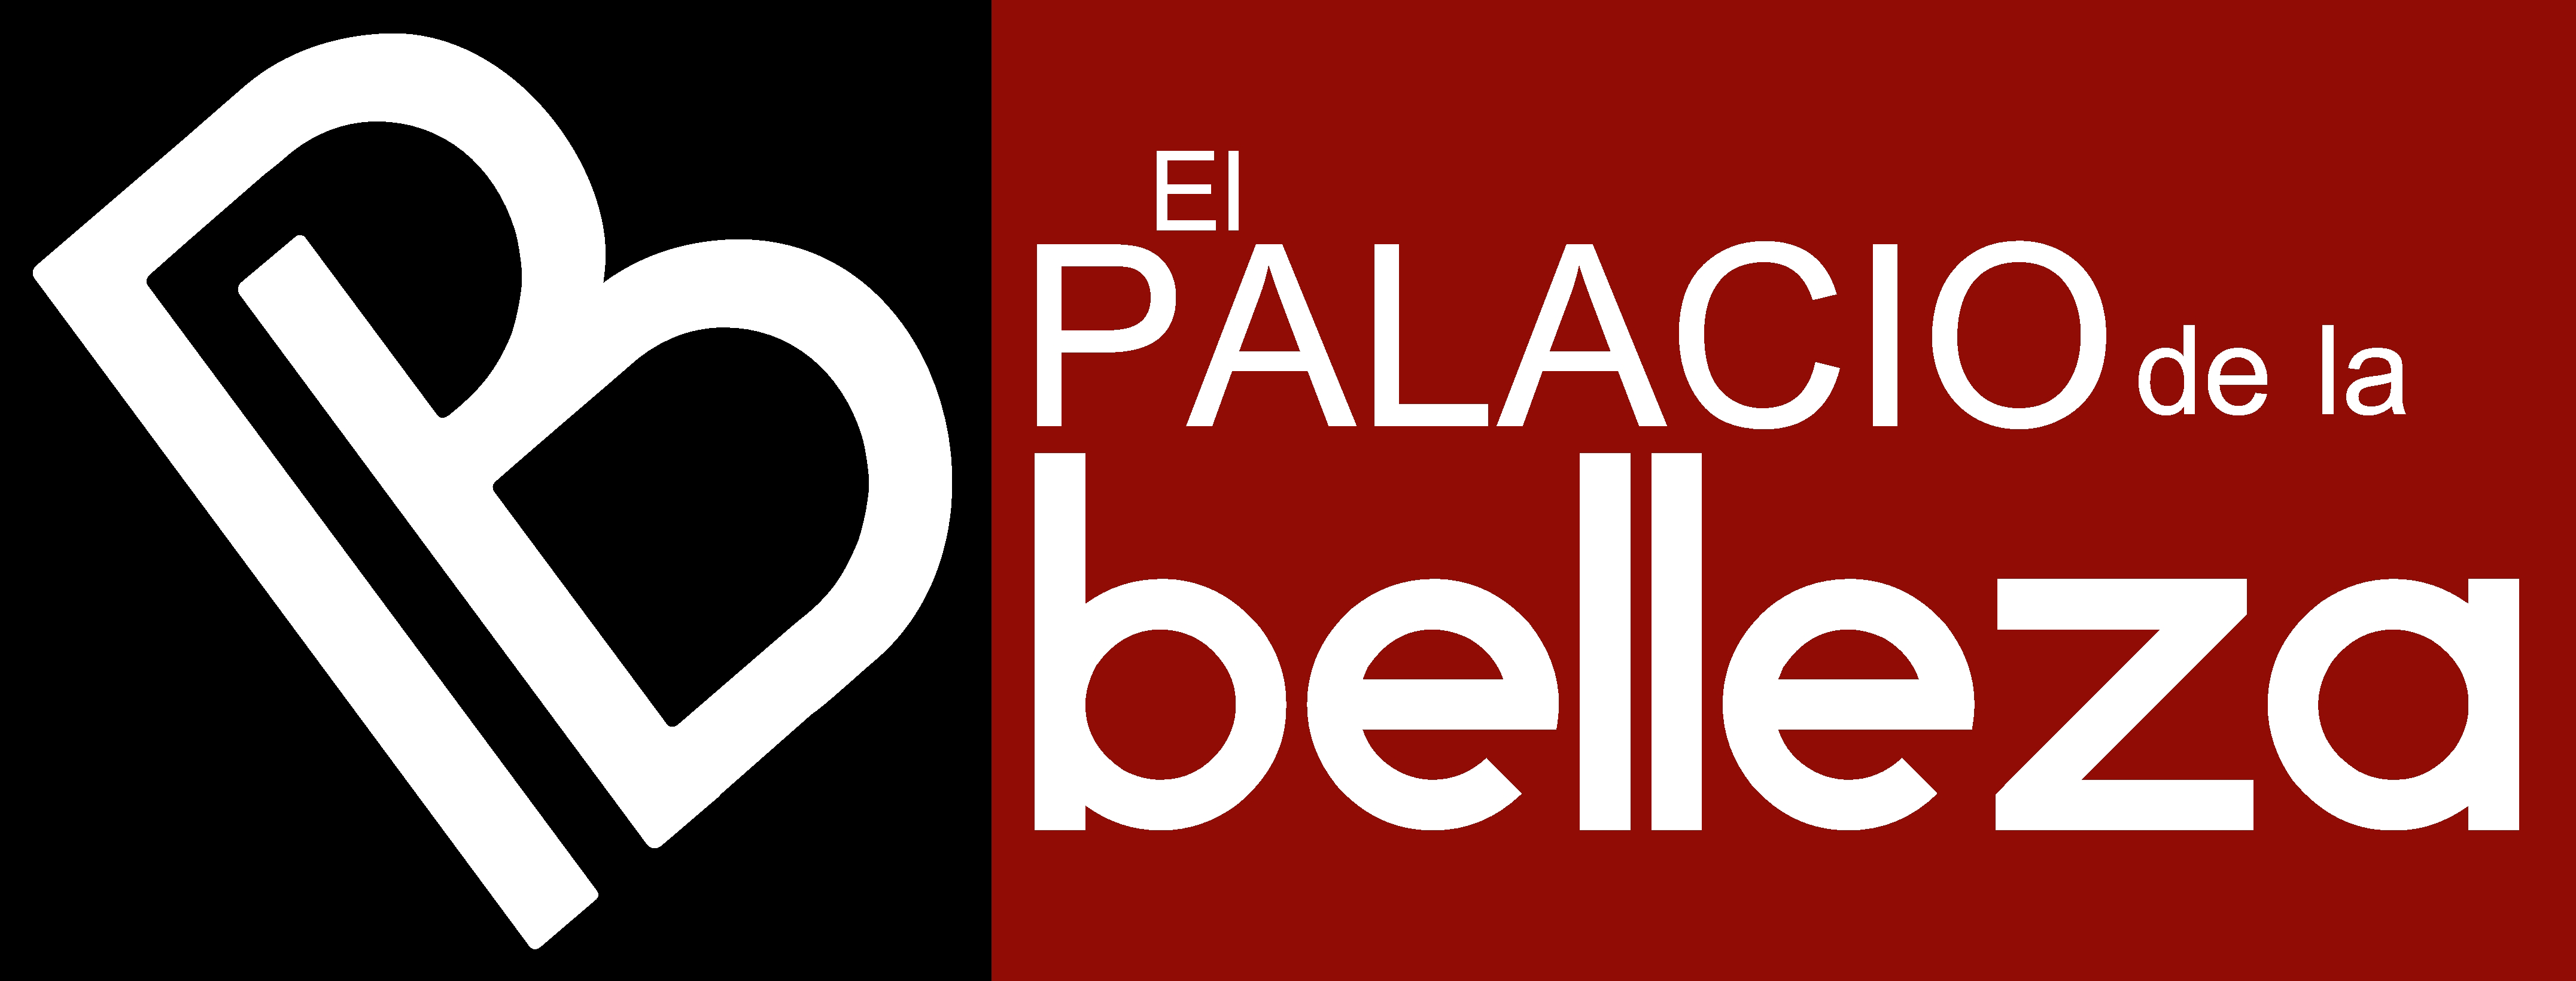 EL PALACIO DE LA BELLEZA